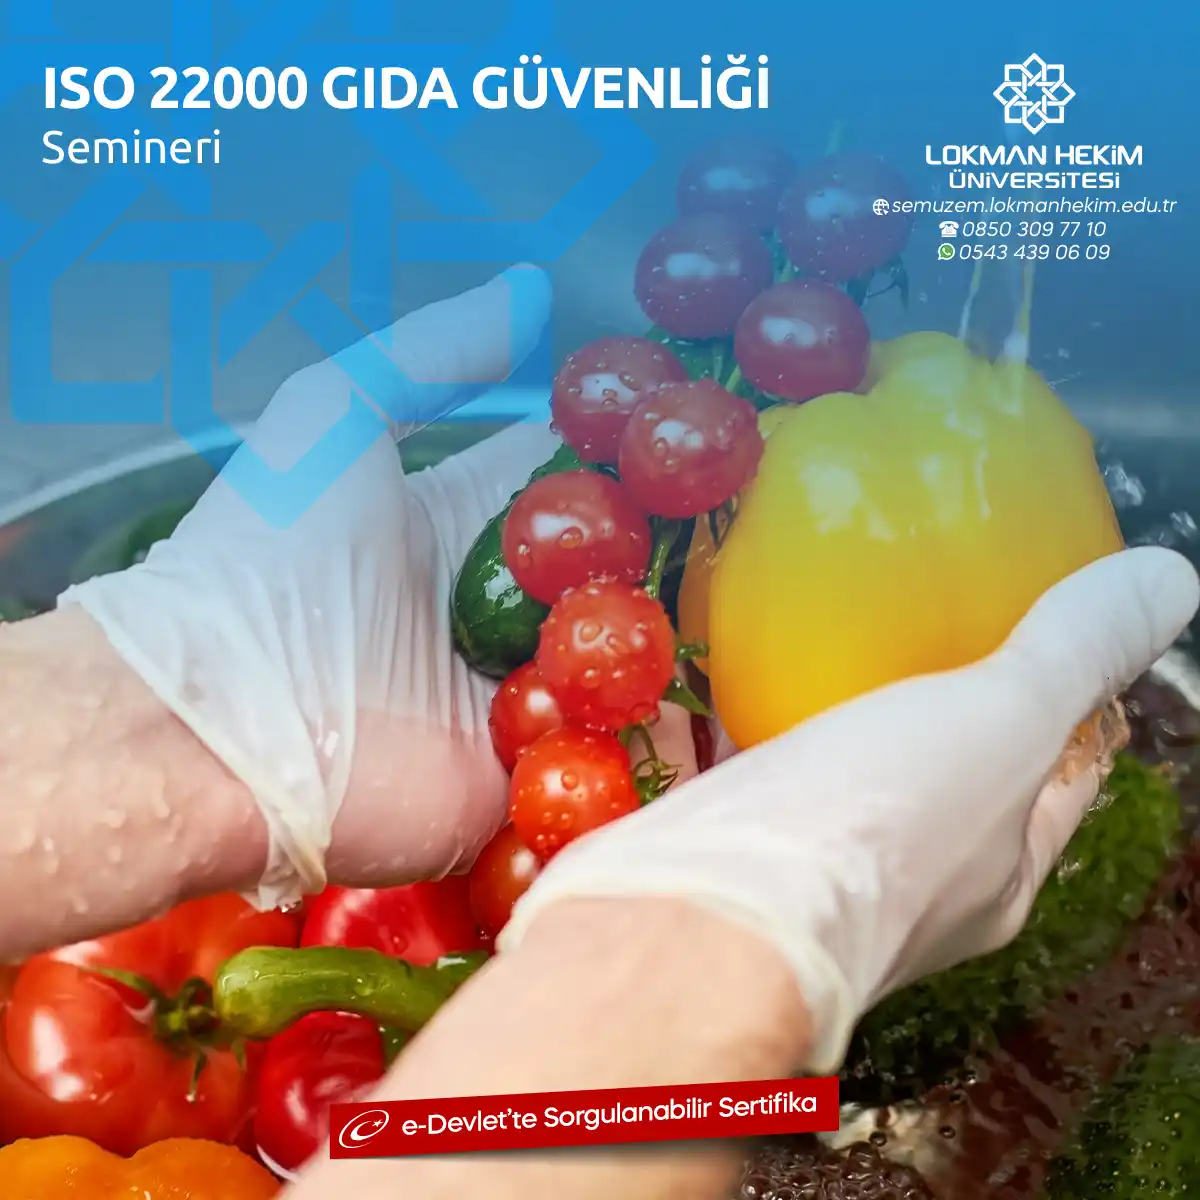 ISO 22000 Gıda Güvenliği Semineri